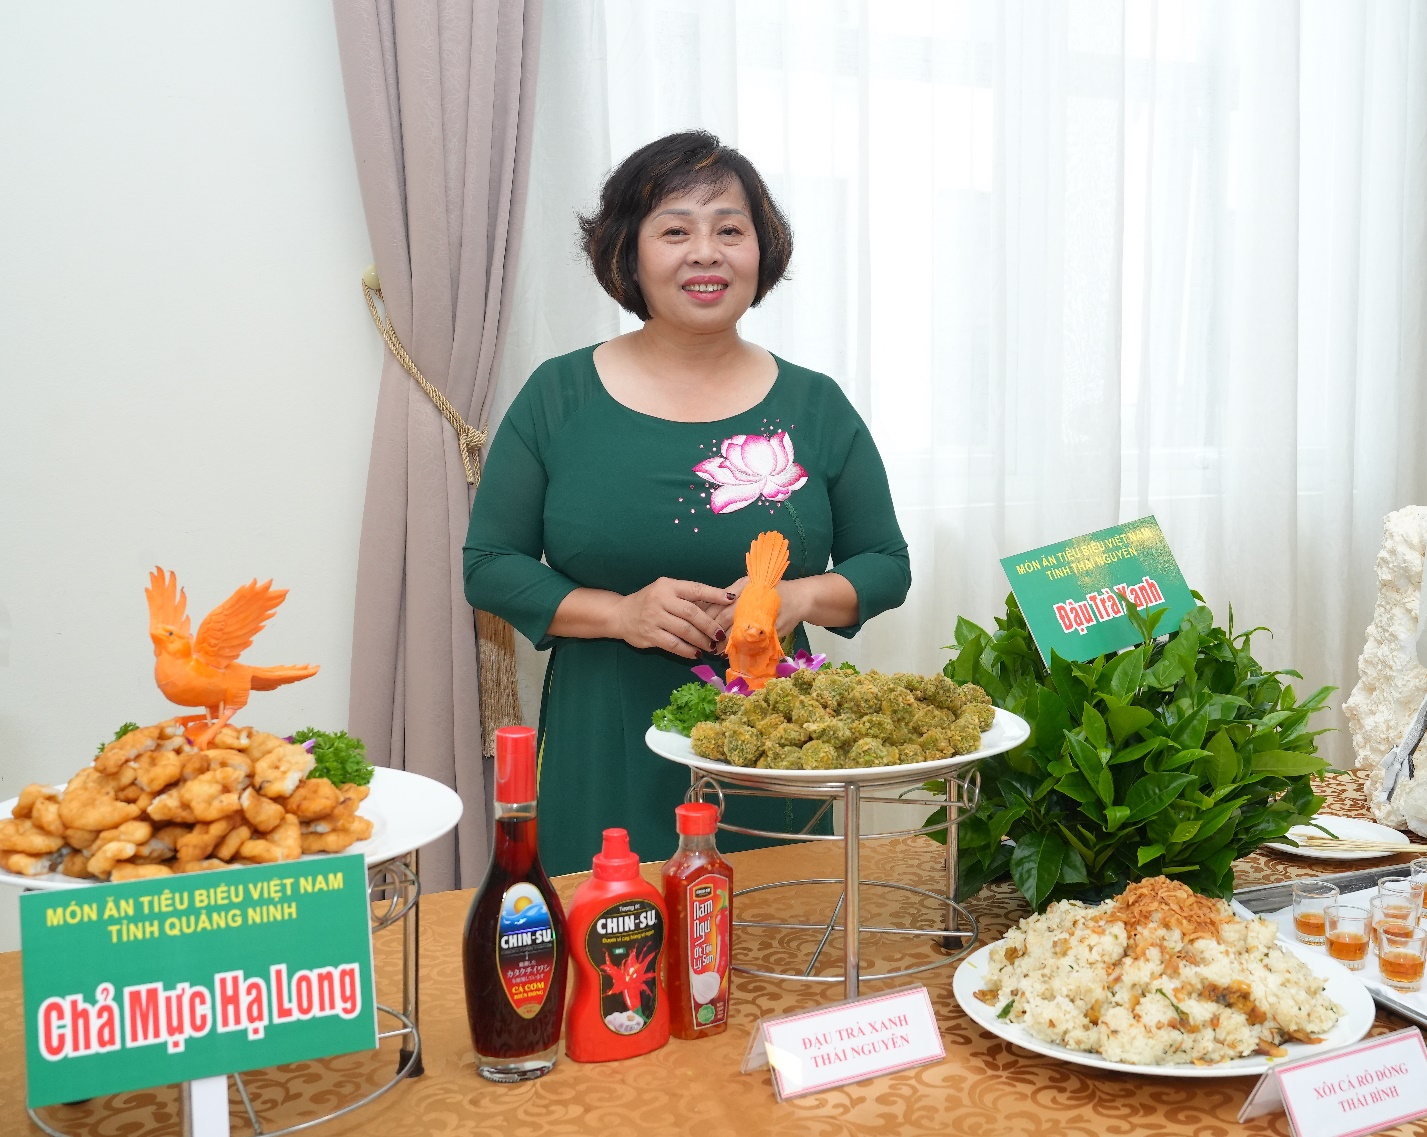 CHIN-SU đồng hành cùng Hiệp hội Văn hóa Ẩm thực Việt Nam vinh danh 121 món ăn tiêu biểu năm 2022 - Ảnh 4.